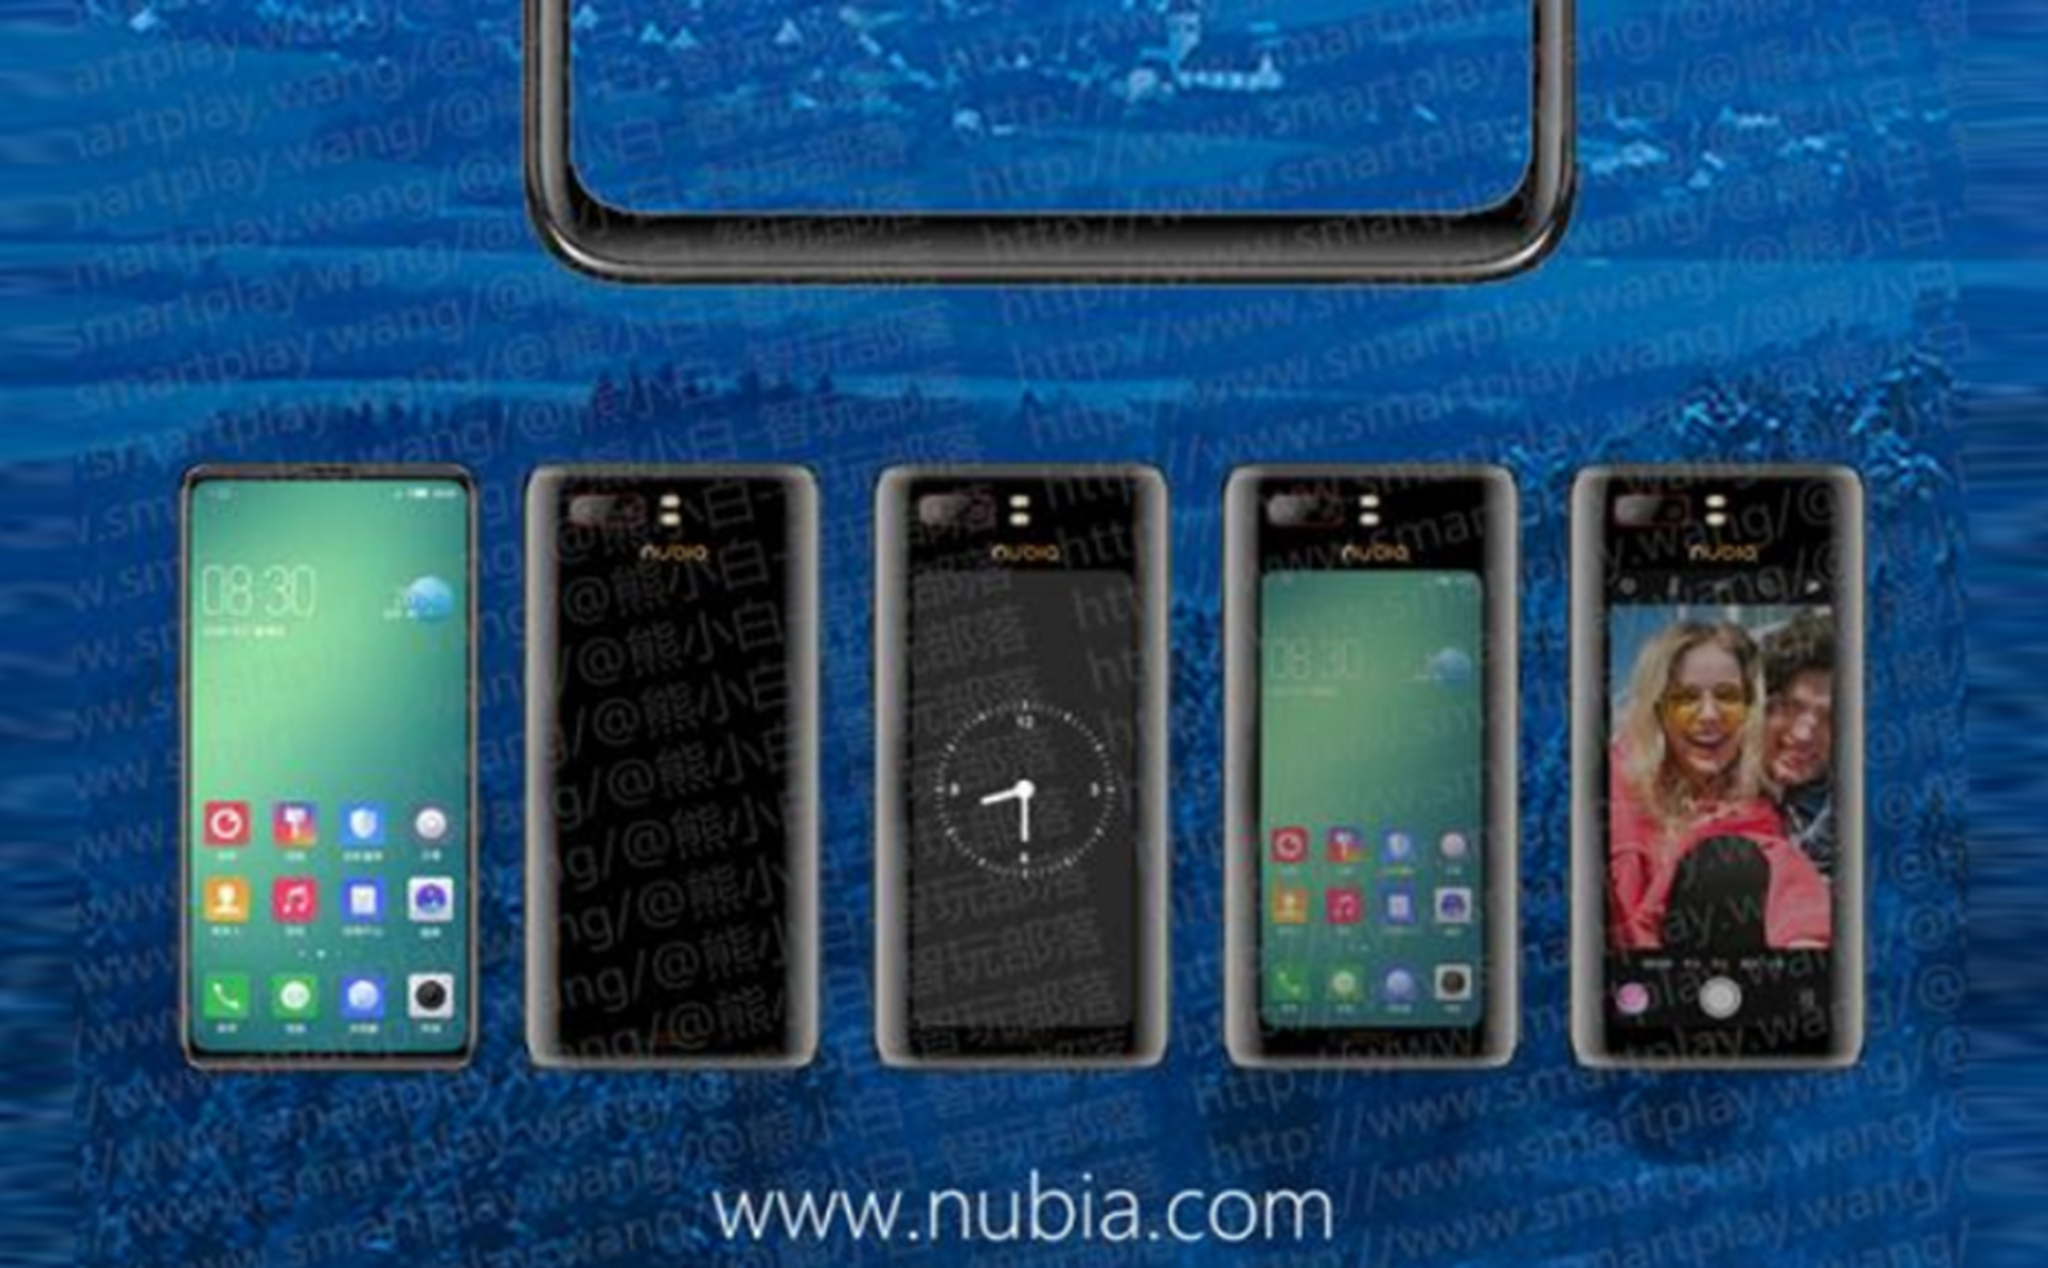 Điện thoại Nubia với mặt trước 6.26", mặt sau OLED 5.1" đã được nộp lên để hợp chuẩn, sắp bán ra?